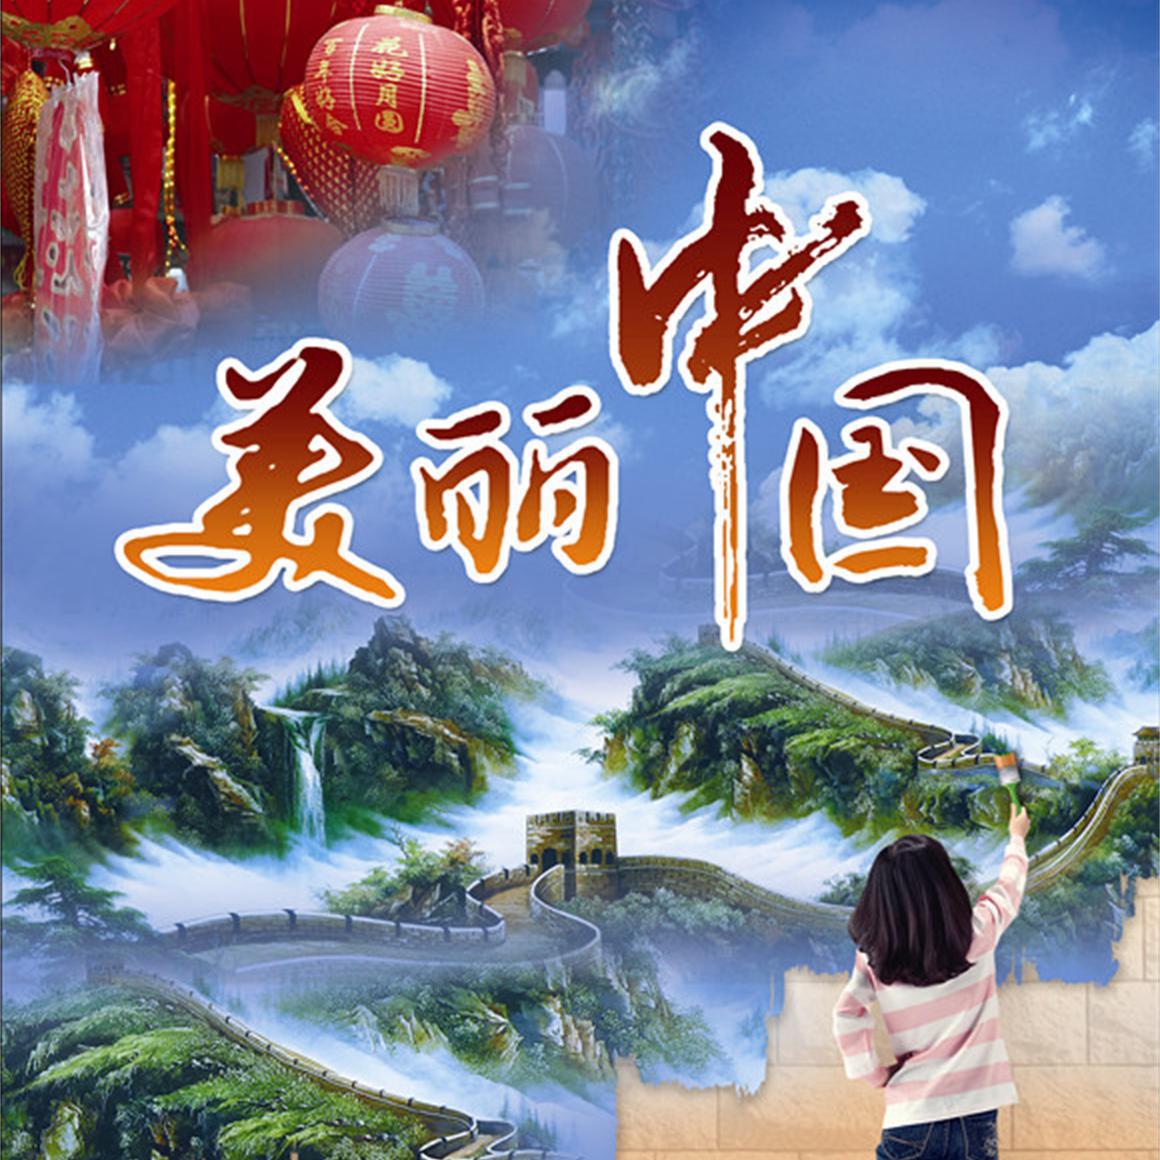 美丽中国走起来(cover:群星)